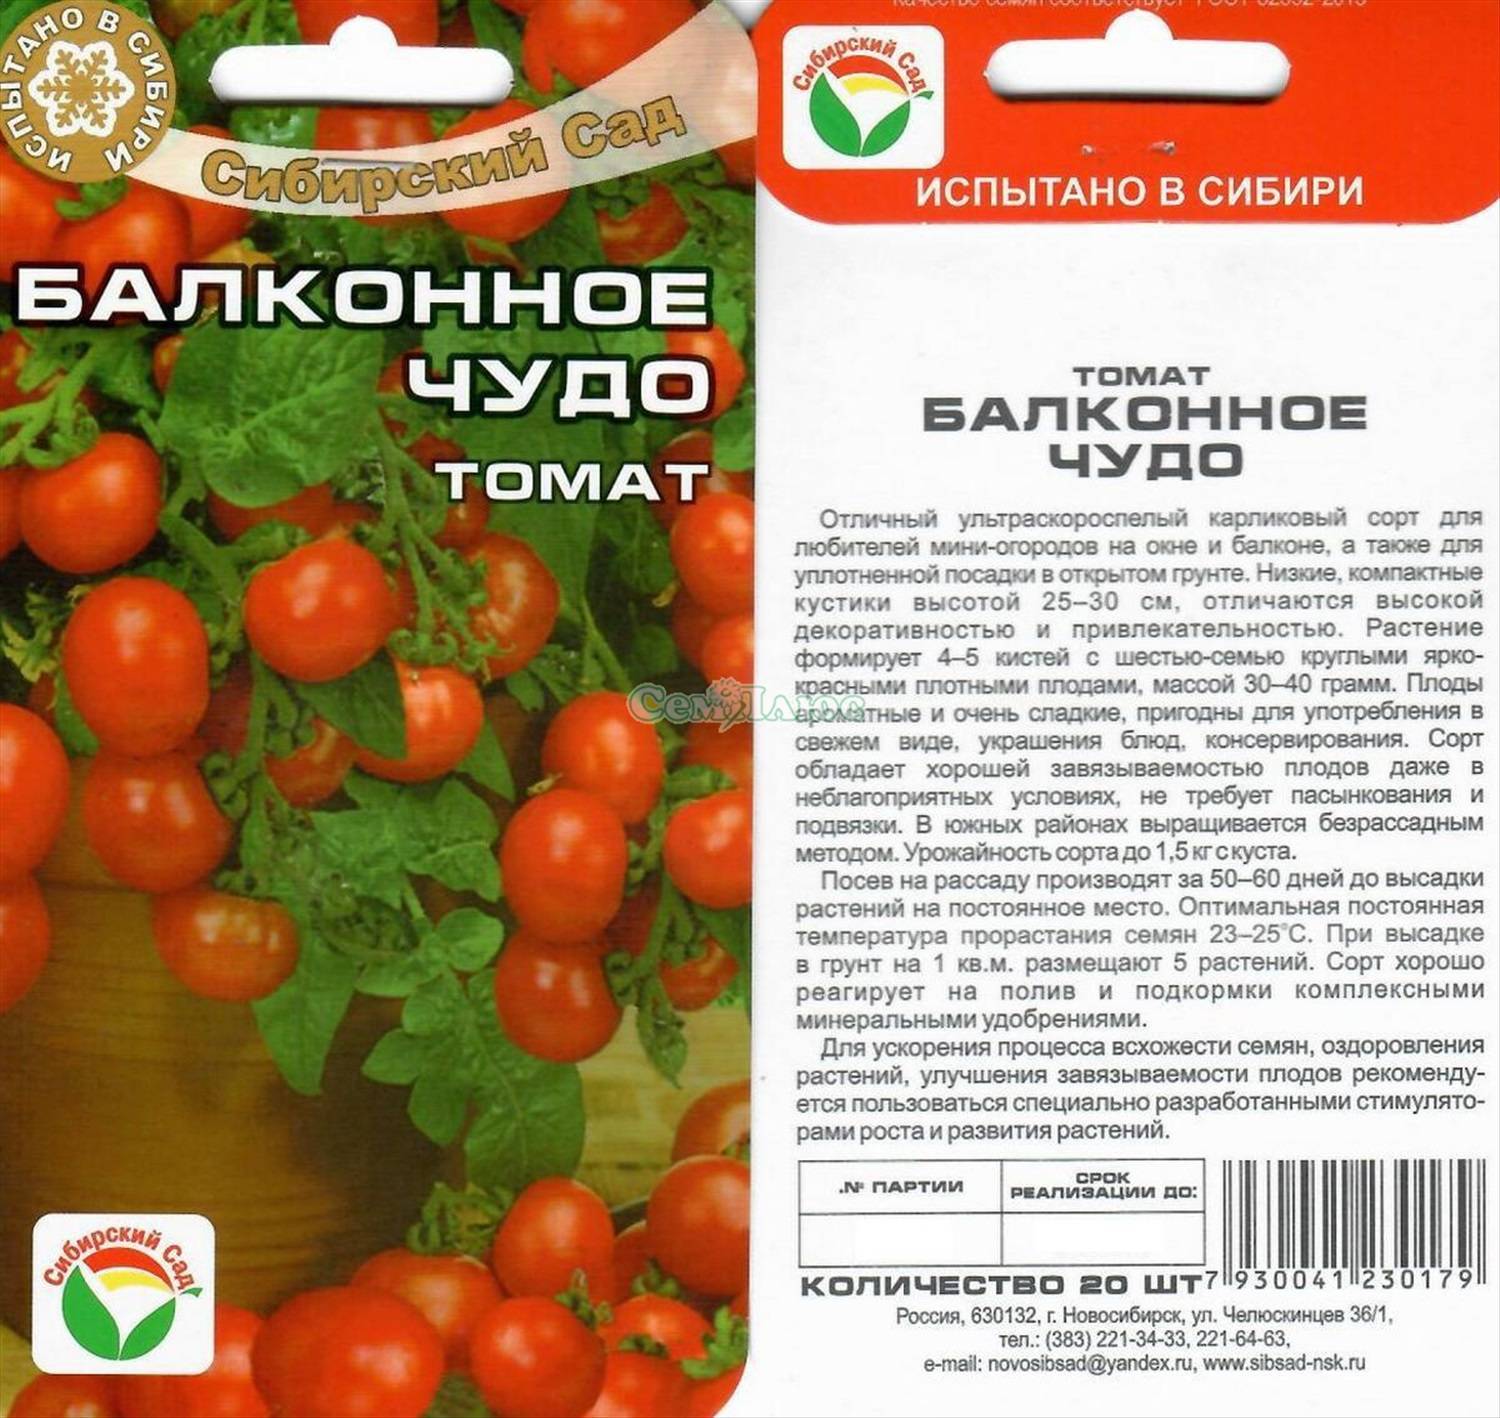 Томат третьяковский f1: характеристика и описание сорта, отзывы об урожайности и фото помидор, посадка рассады